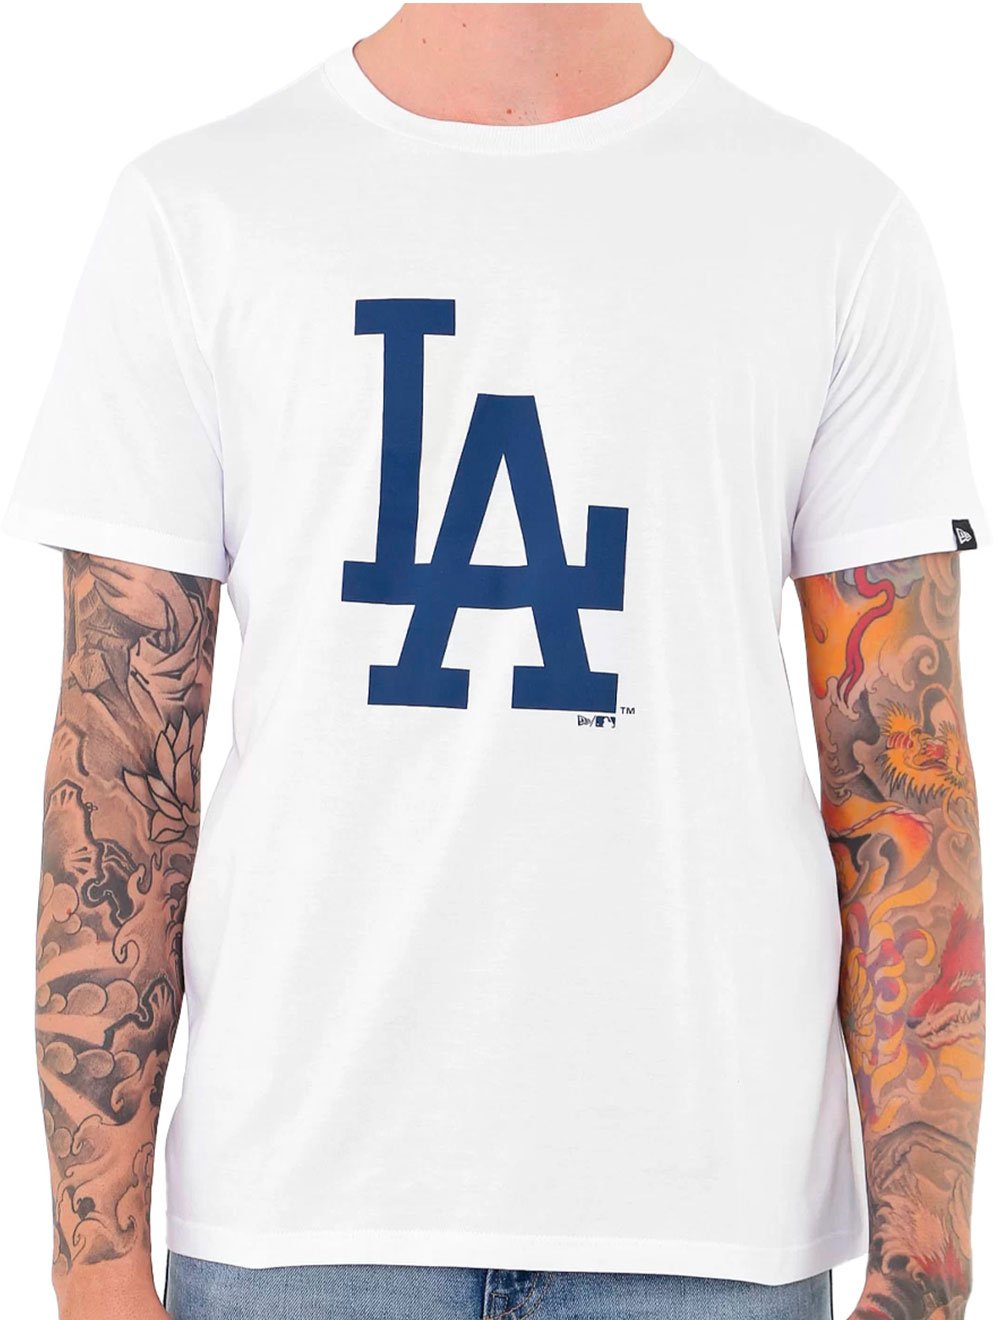 Camiseta New Era Masculina Essentials Duo Los Angeles Dodgers Branca